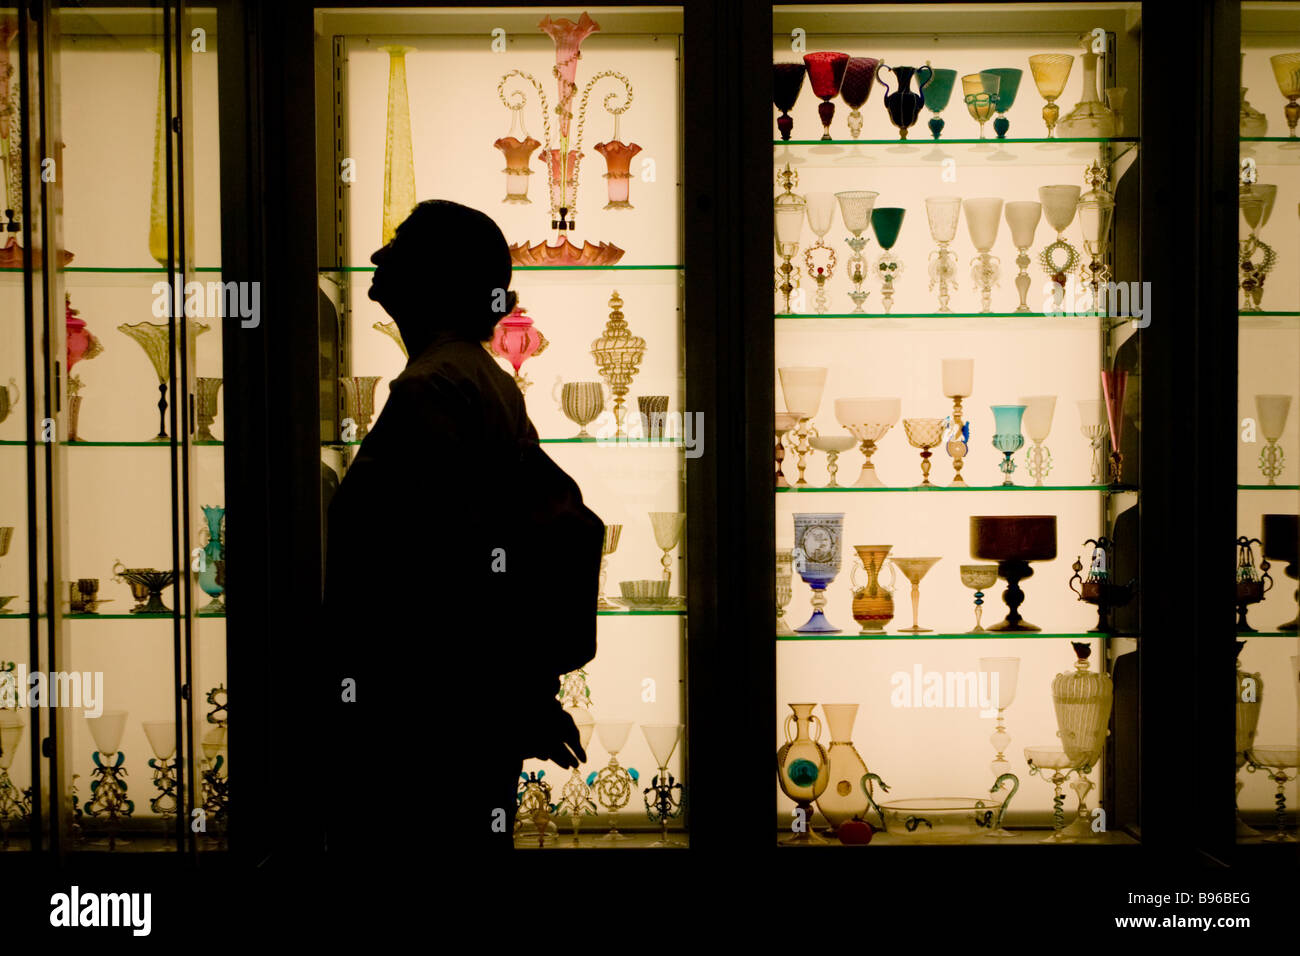 Silhouette donna godendo della vetreria display a Corning museo del vetro Corning New York Finger Lakes Steuben County Foto Stock